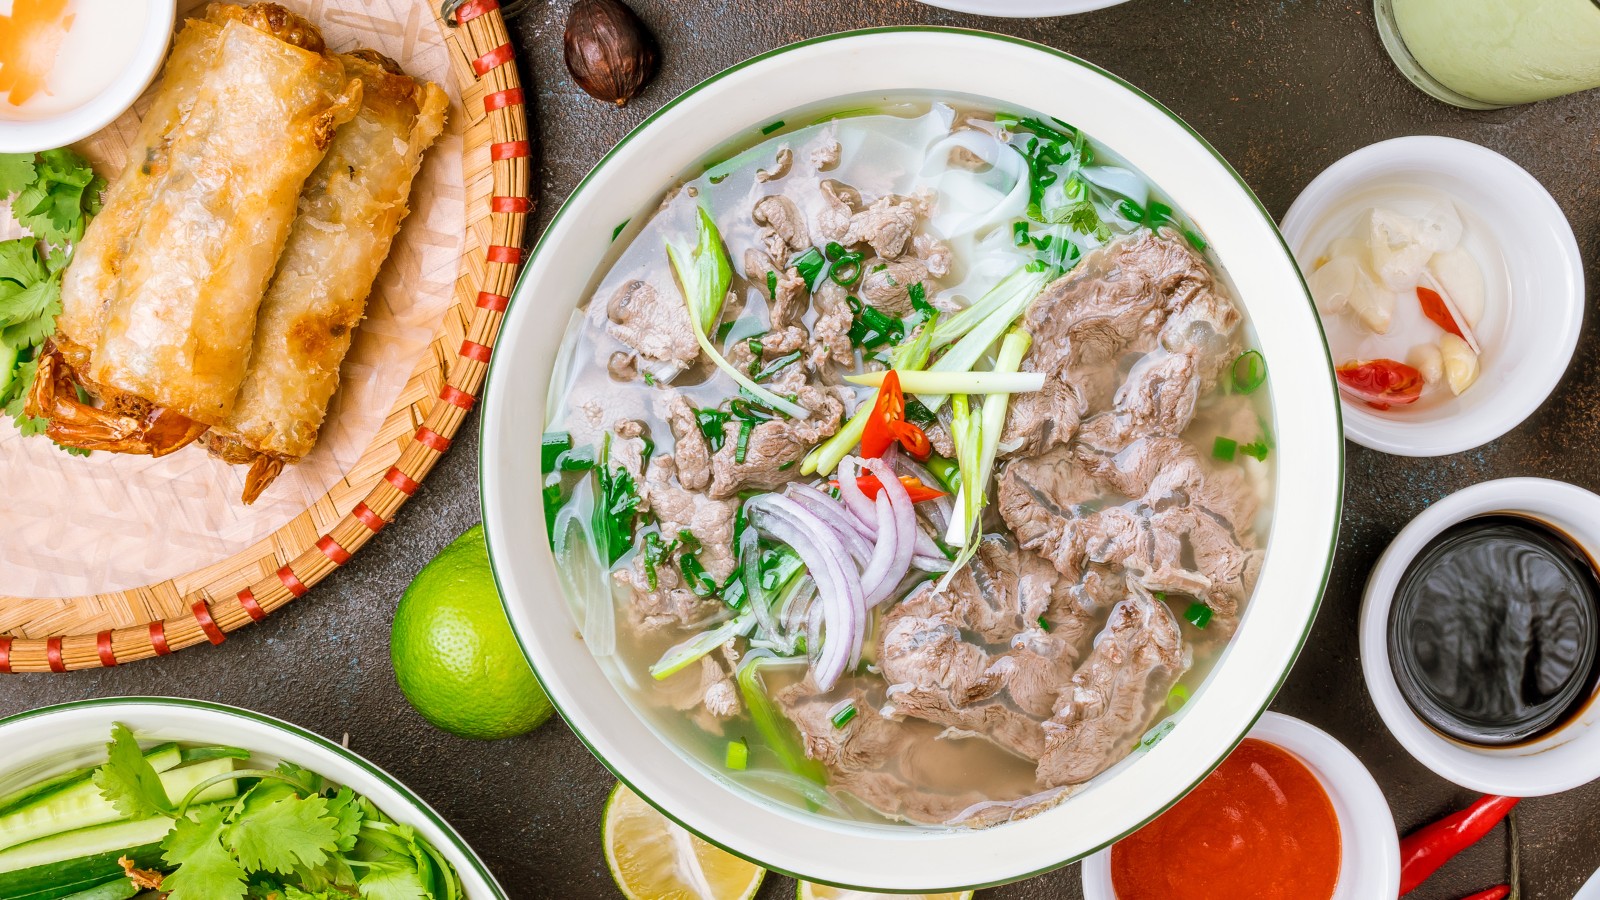 Pho - The Most Famous Vietnamese Cuisine